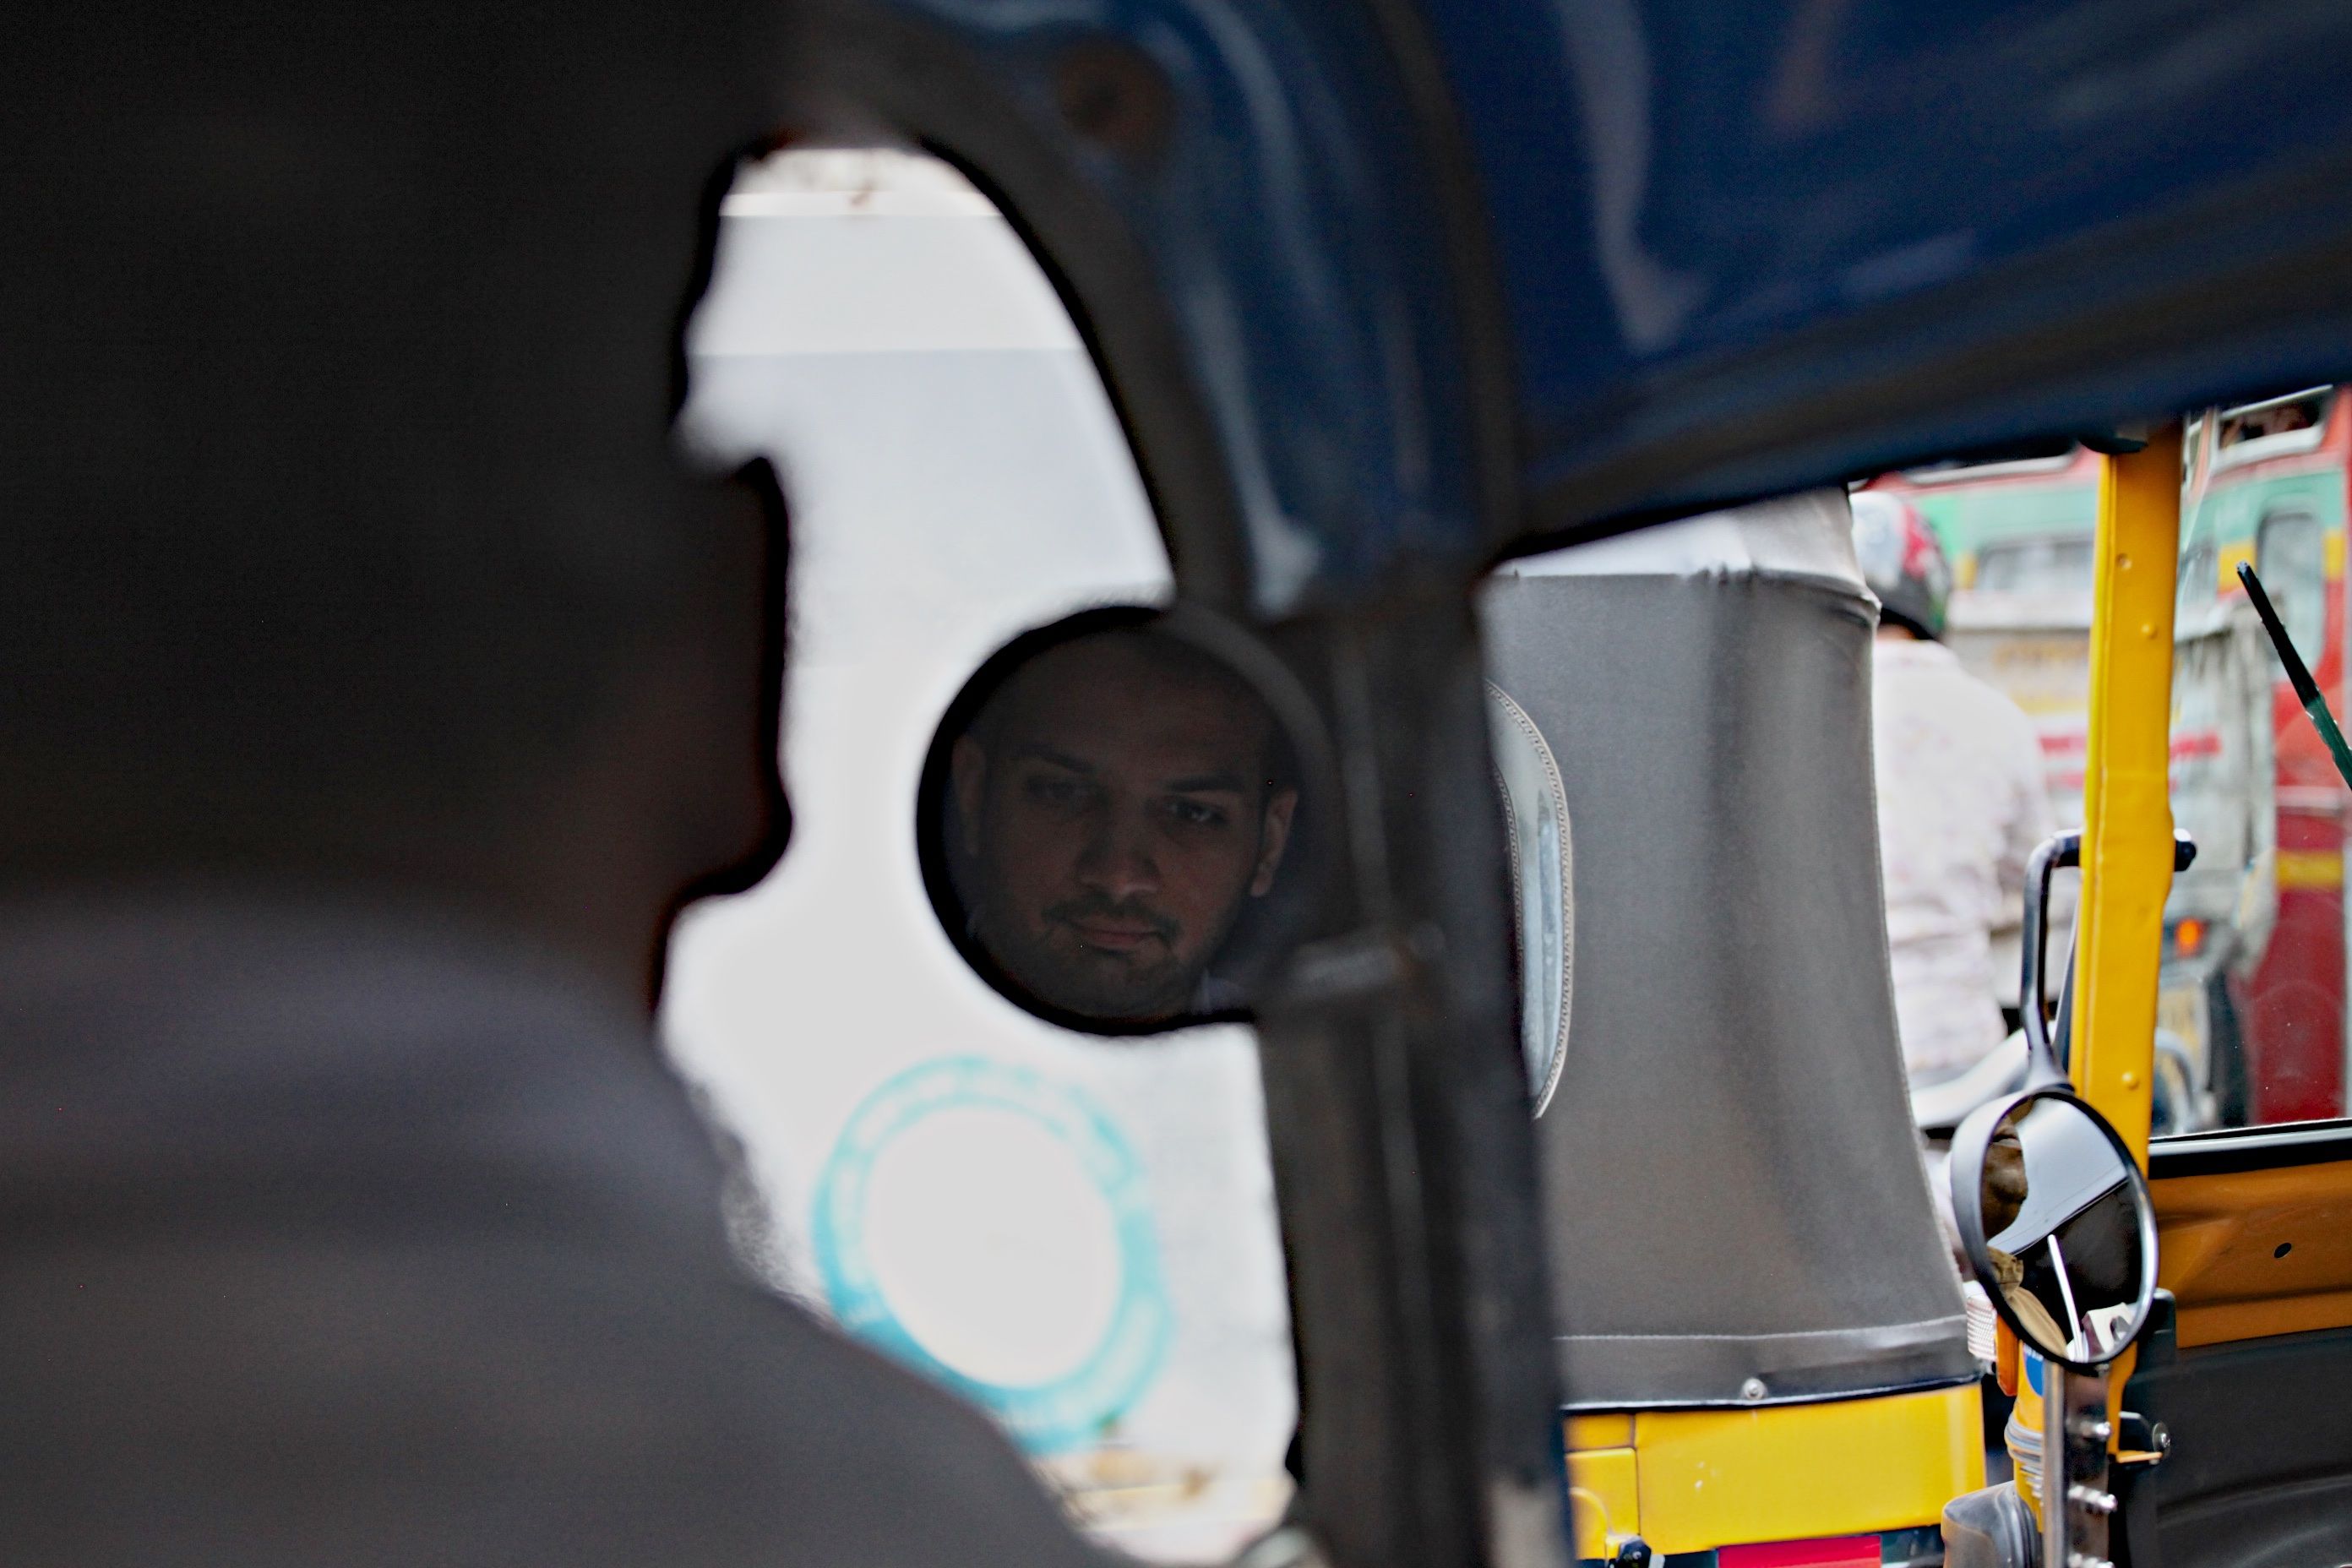 Priyank Mathur rides in a rickshaw through Mumbai. Image by Wes Bruer. India, 2017.